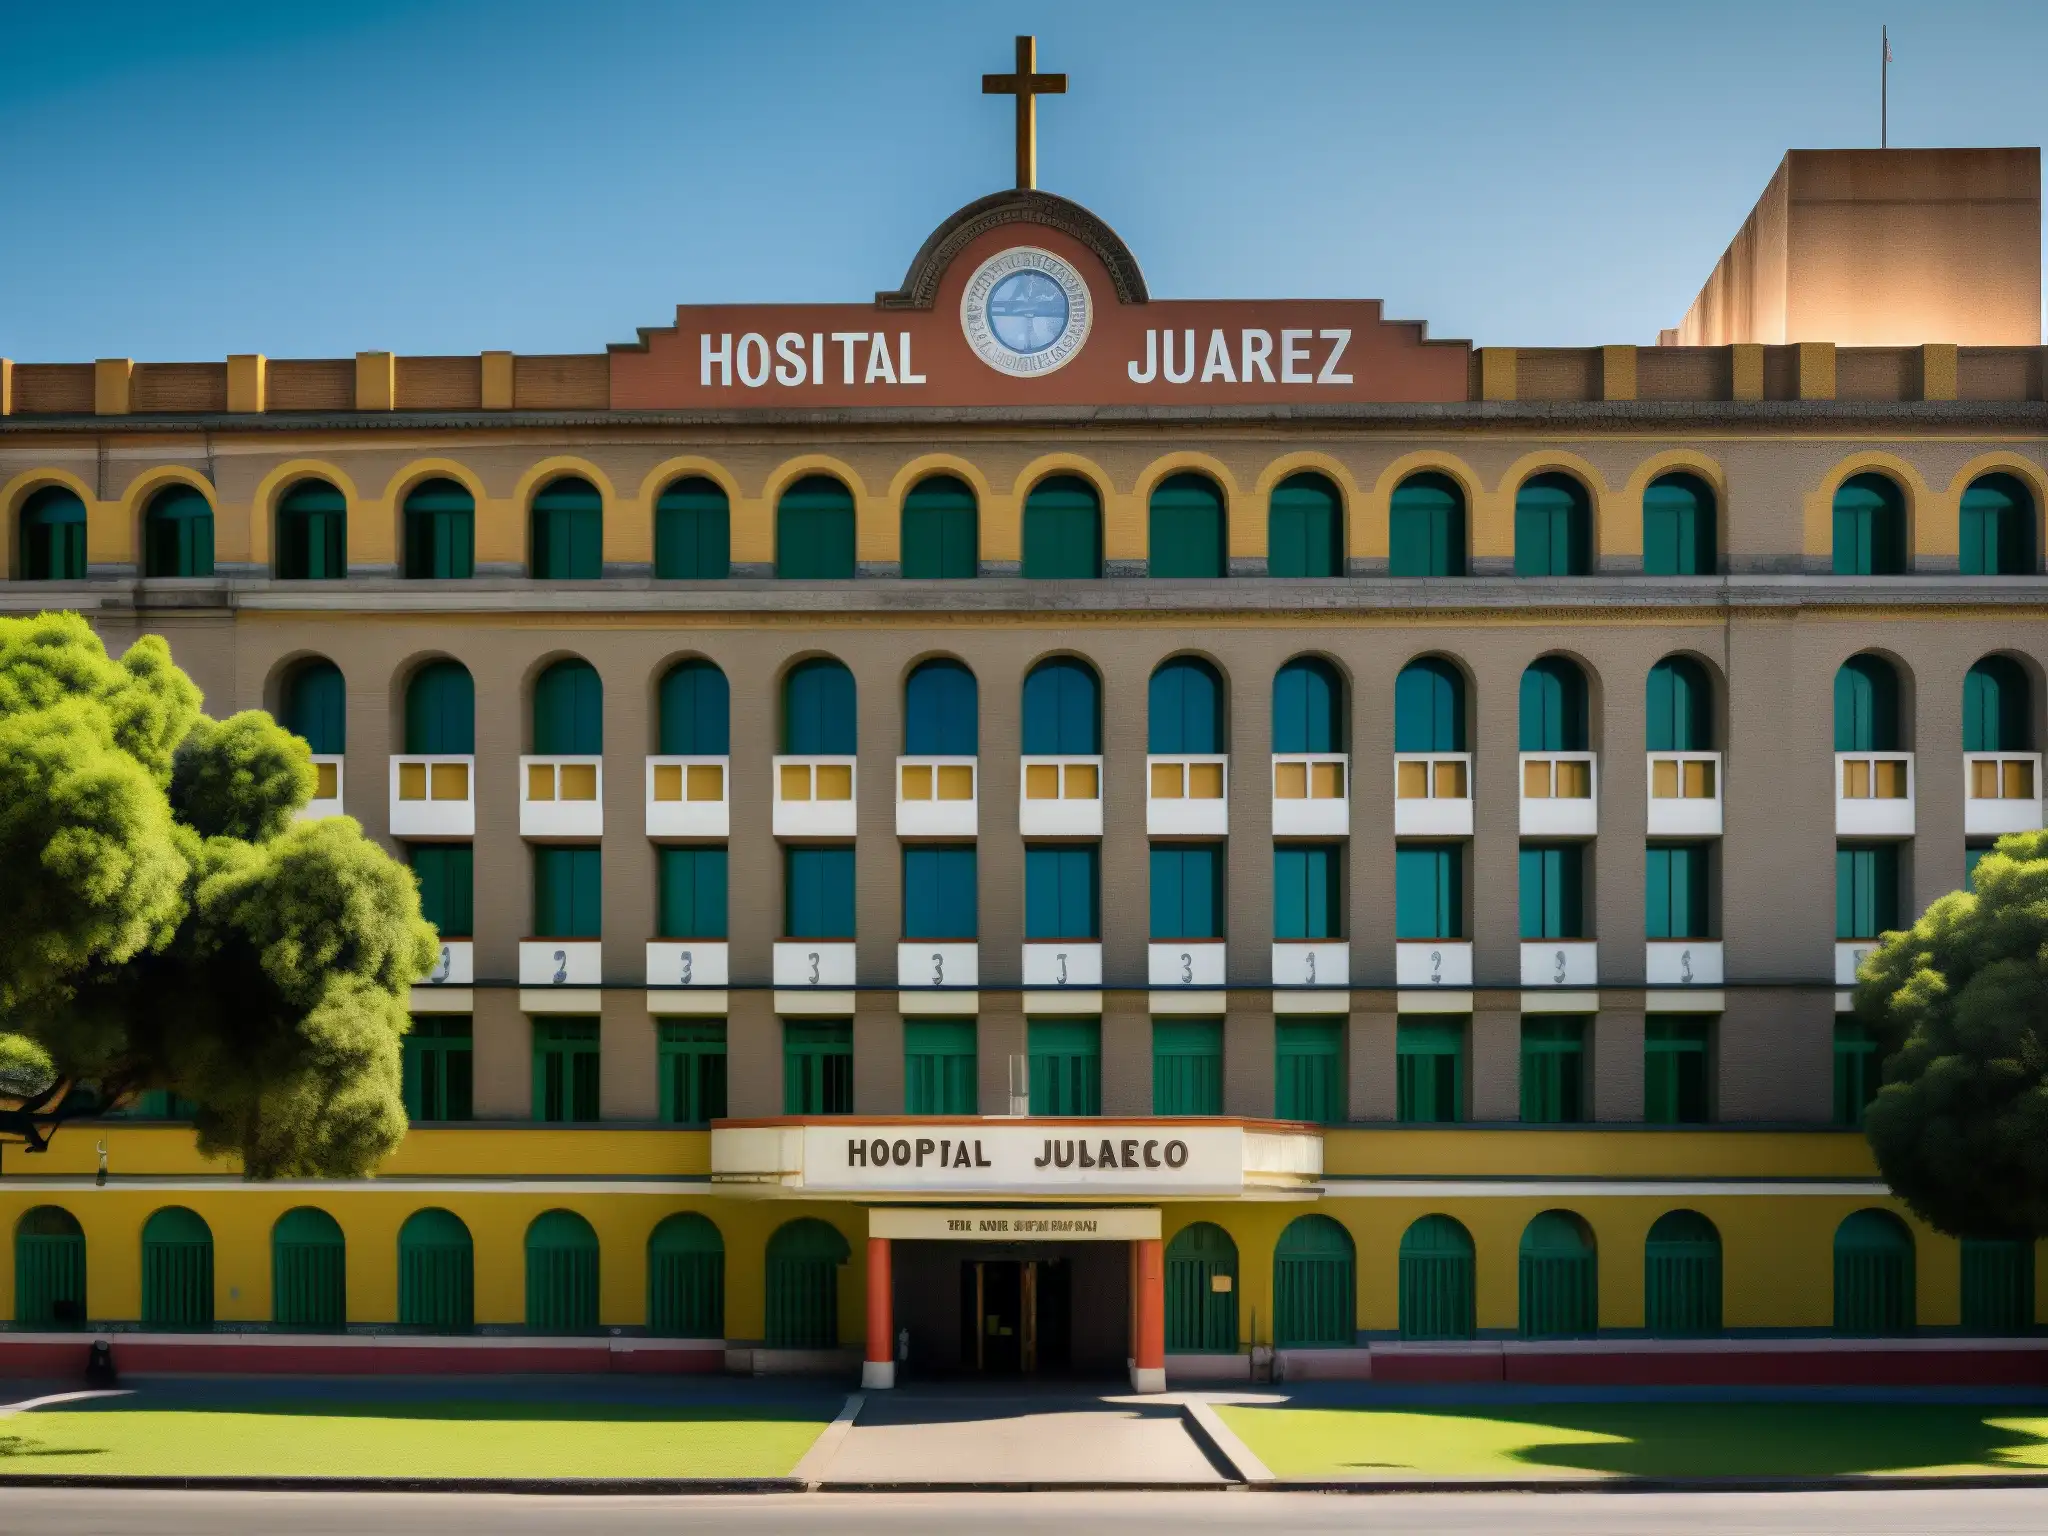 Imagen del Hospital Juárez en Ciudad de México, destacando su arquitectura histórica y entorno urbano, evocando la leyenda mexicana La Planchada